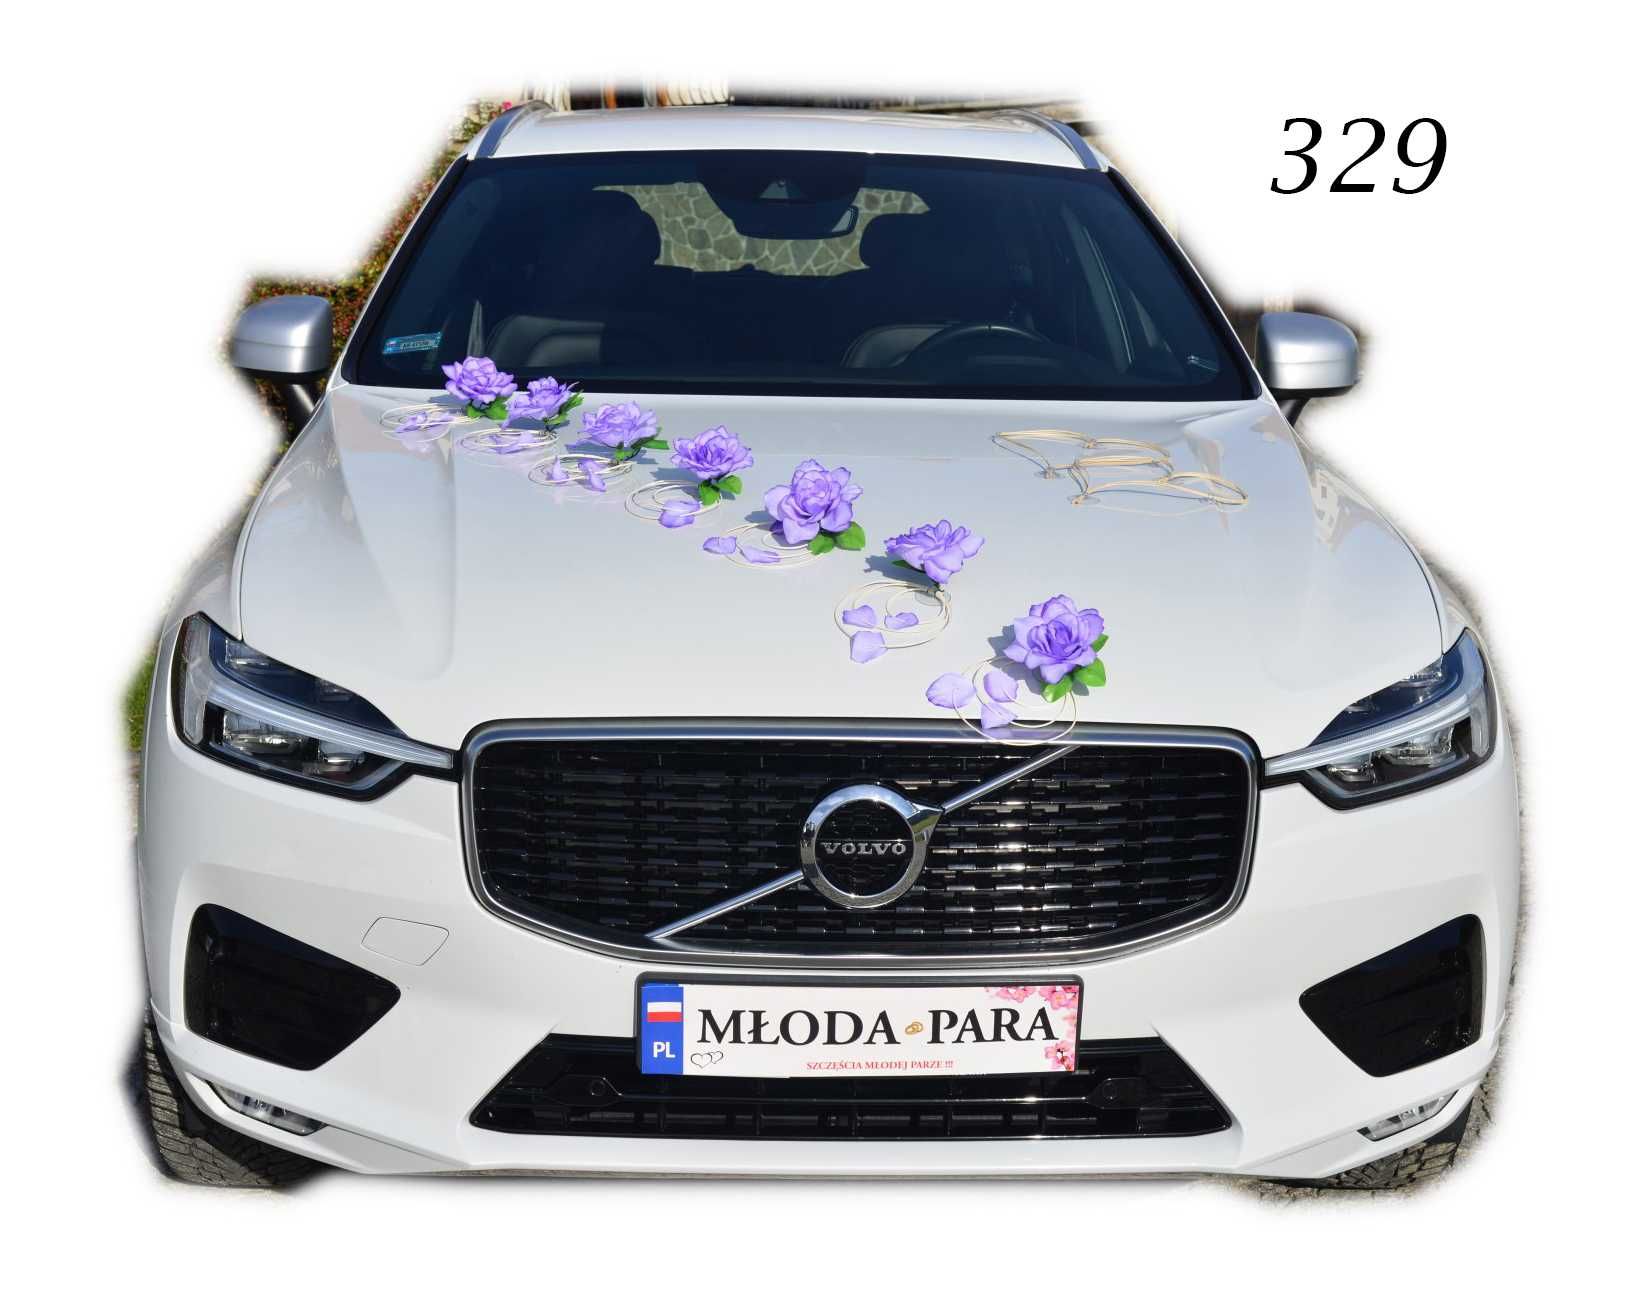 FIOLETOWA ozdoba dekoracja na samochód POLECAMY Nr 329